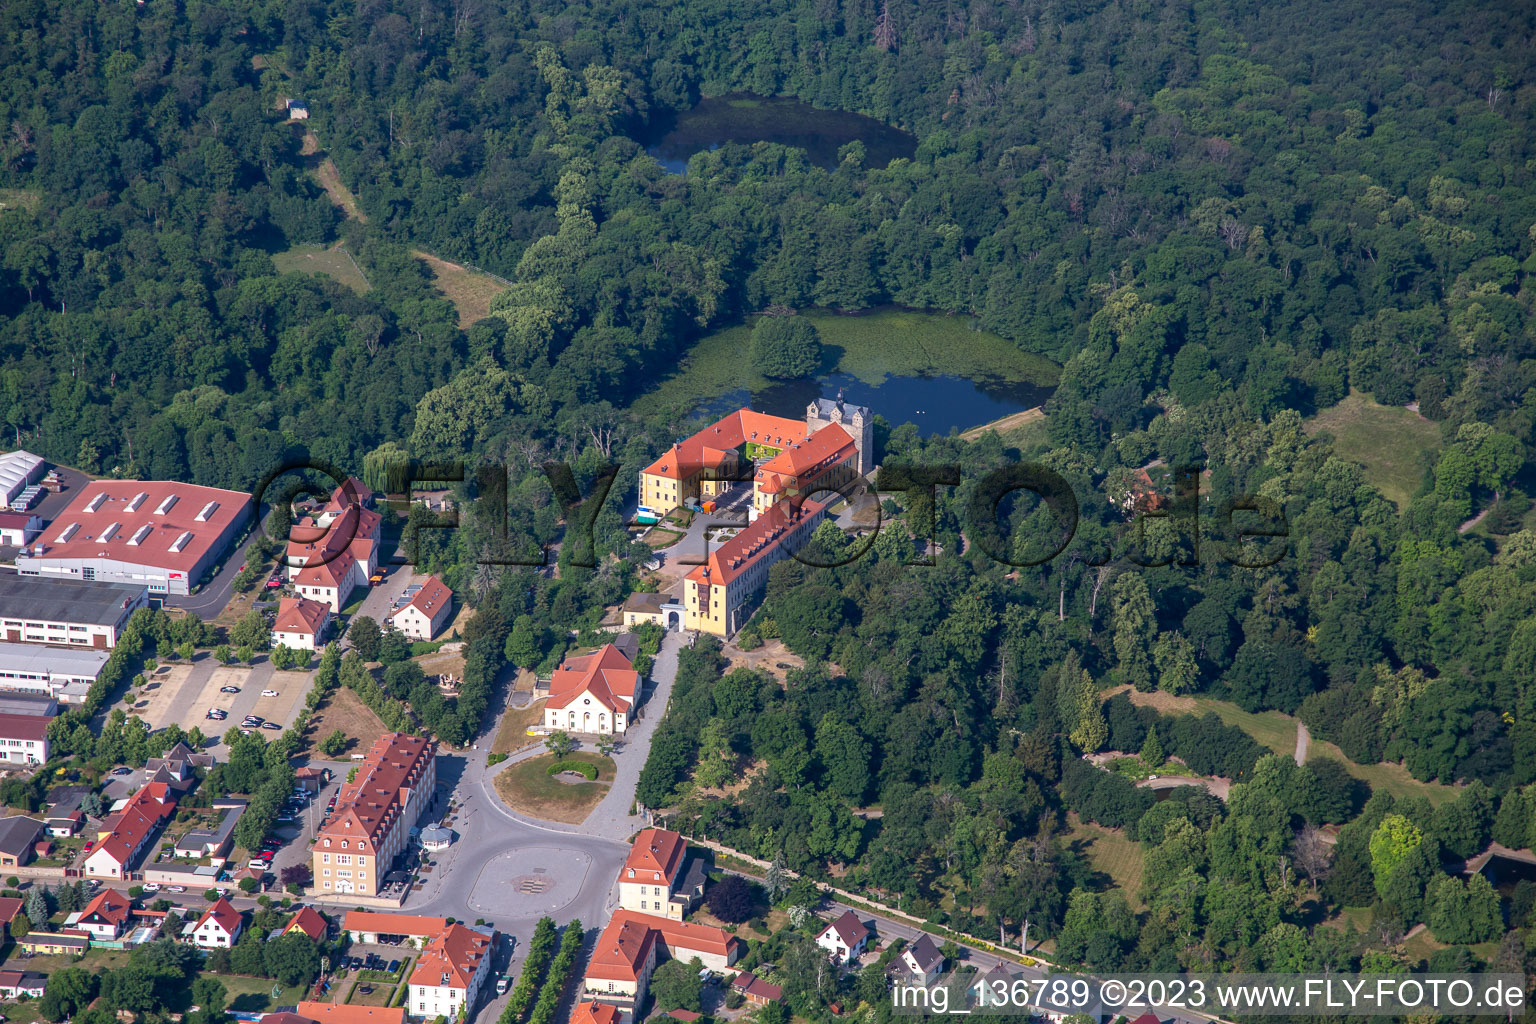 Vue aérienne de Château et parc du château avec étang du château Ballenstedt à Ballenstedt dans le département Saxe-Anhalt, Allemagne